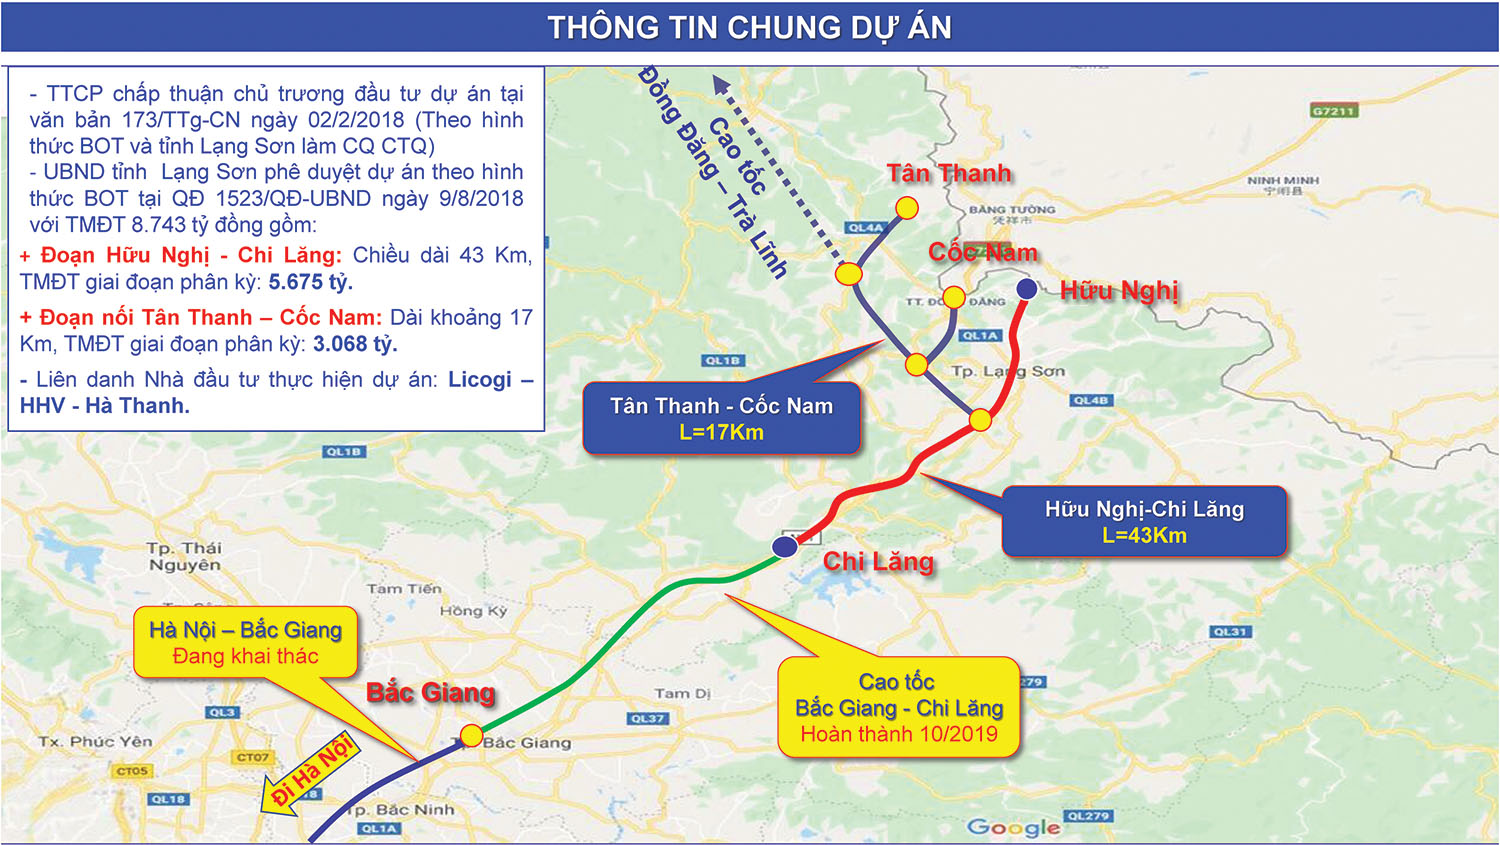 Đoạn Hữu Nghị - Chi Lăng có chiều dài 43 km chưa hoàn thành đã tạo nên sự đứt gãy trong việc kết nối tuyến cao tốc Bắc Giang - Lạng Sơn